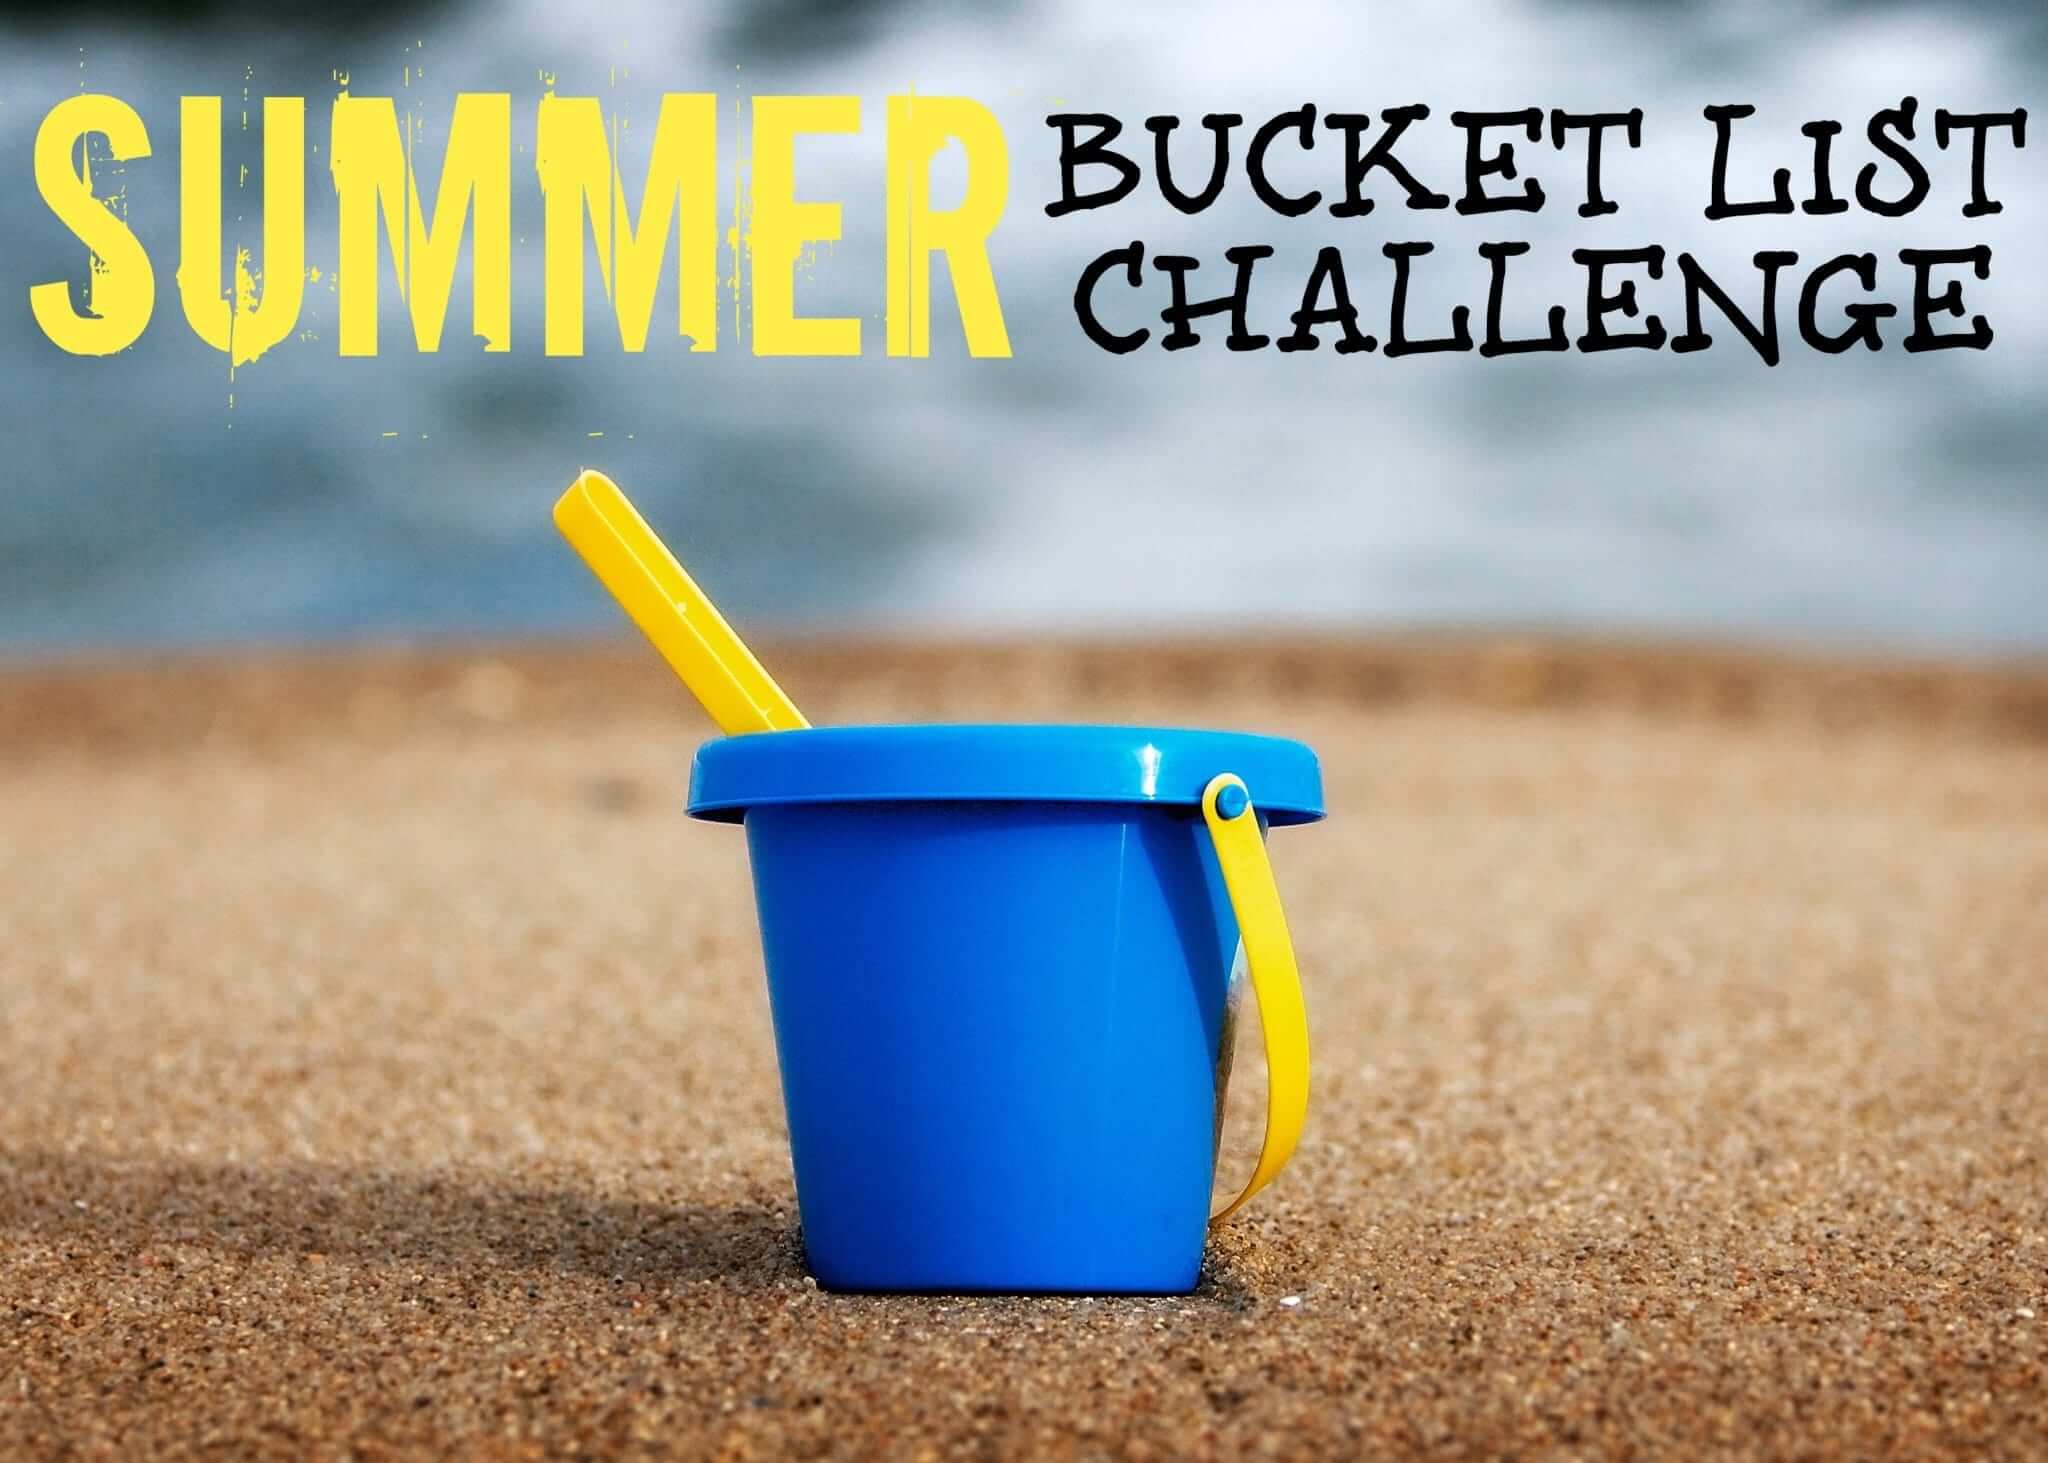 Summer Bucket List Challenge Week 3